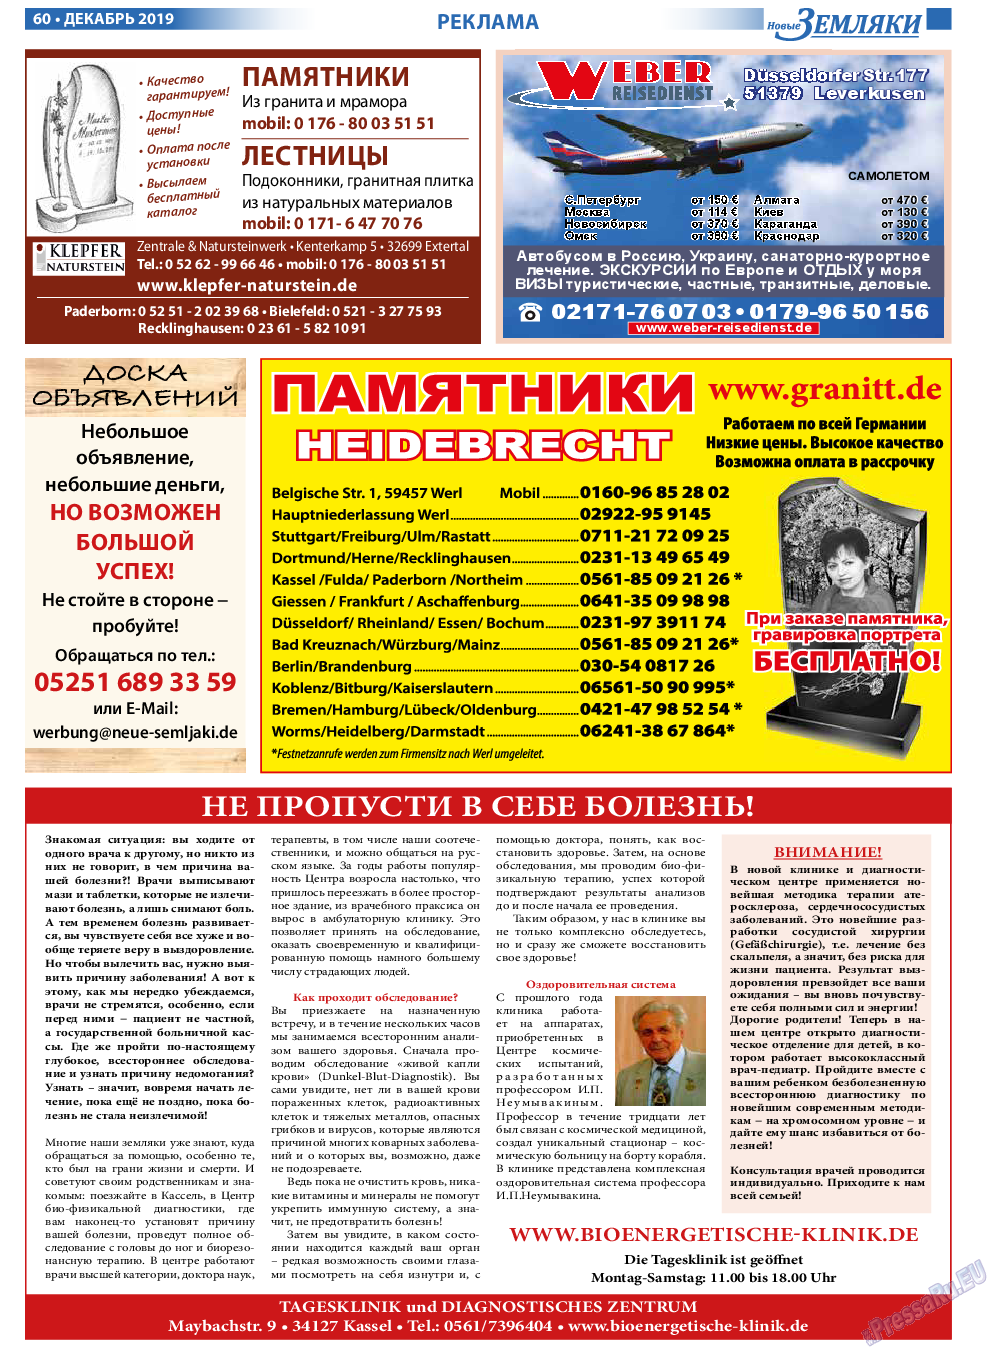 Новые Земляки, газета. 2019 №12 стр.60